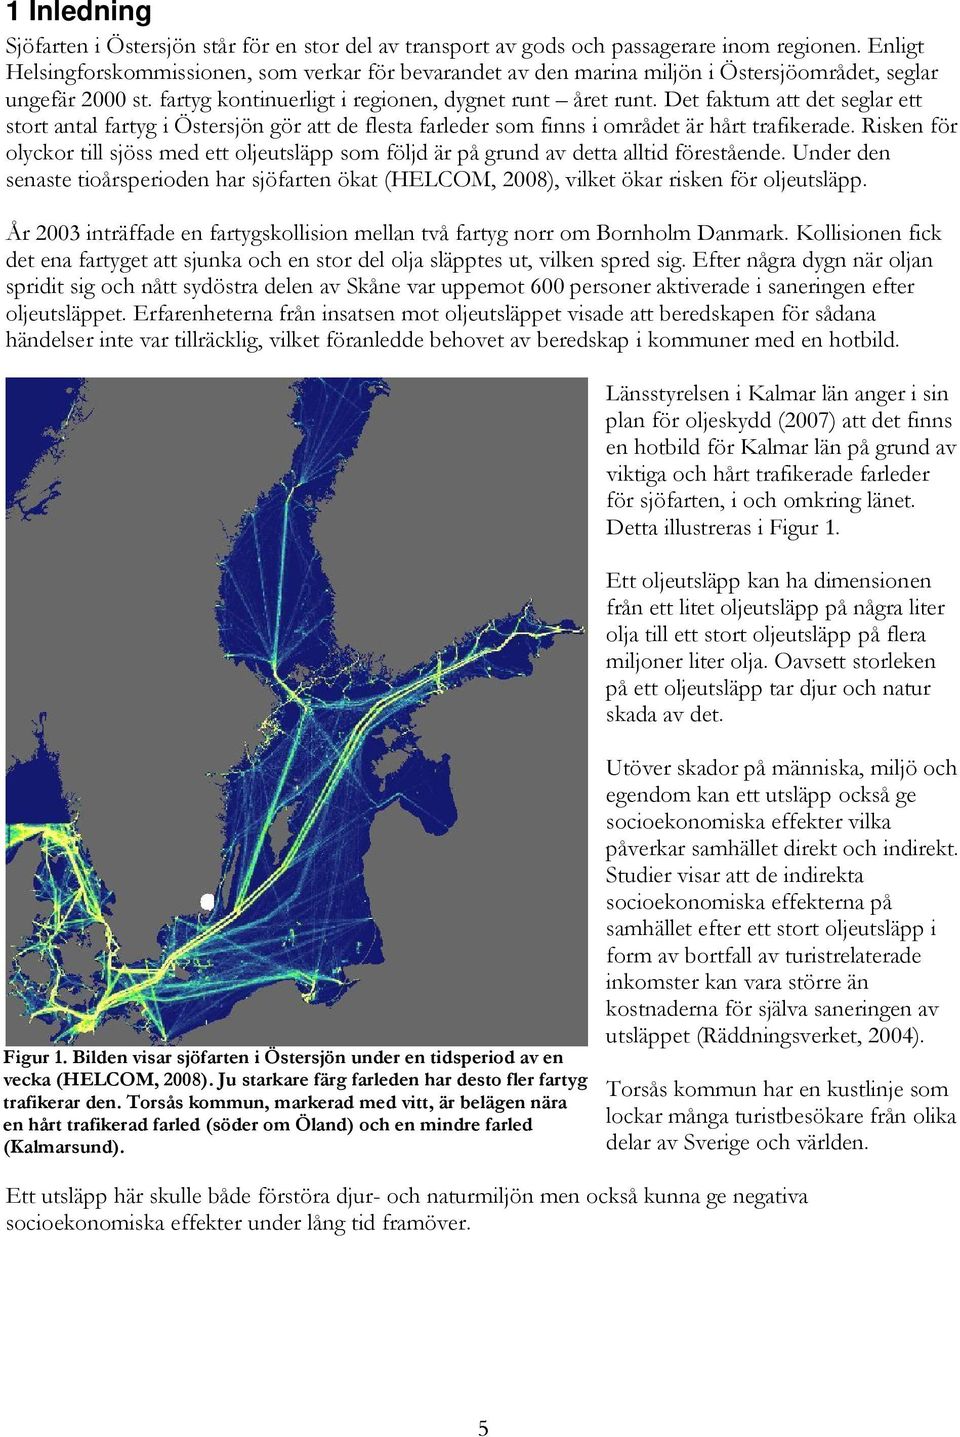 Det faktum att det seglar ett stort antal fartyg i Östersjön gör att de flesta farleder som finns i området är hårt trafikerade.